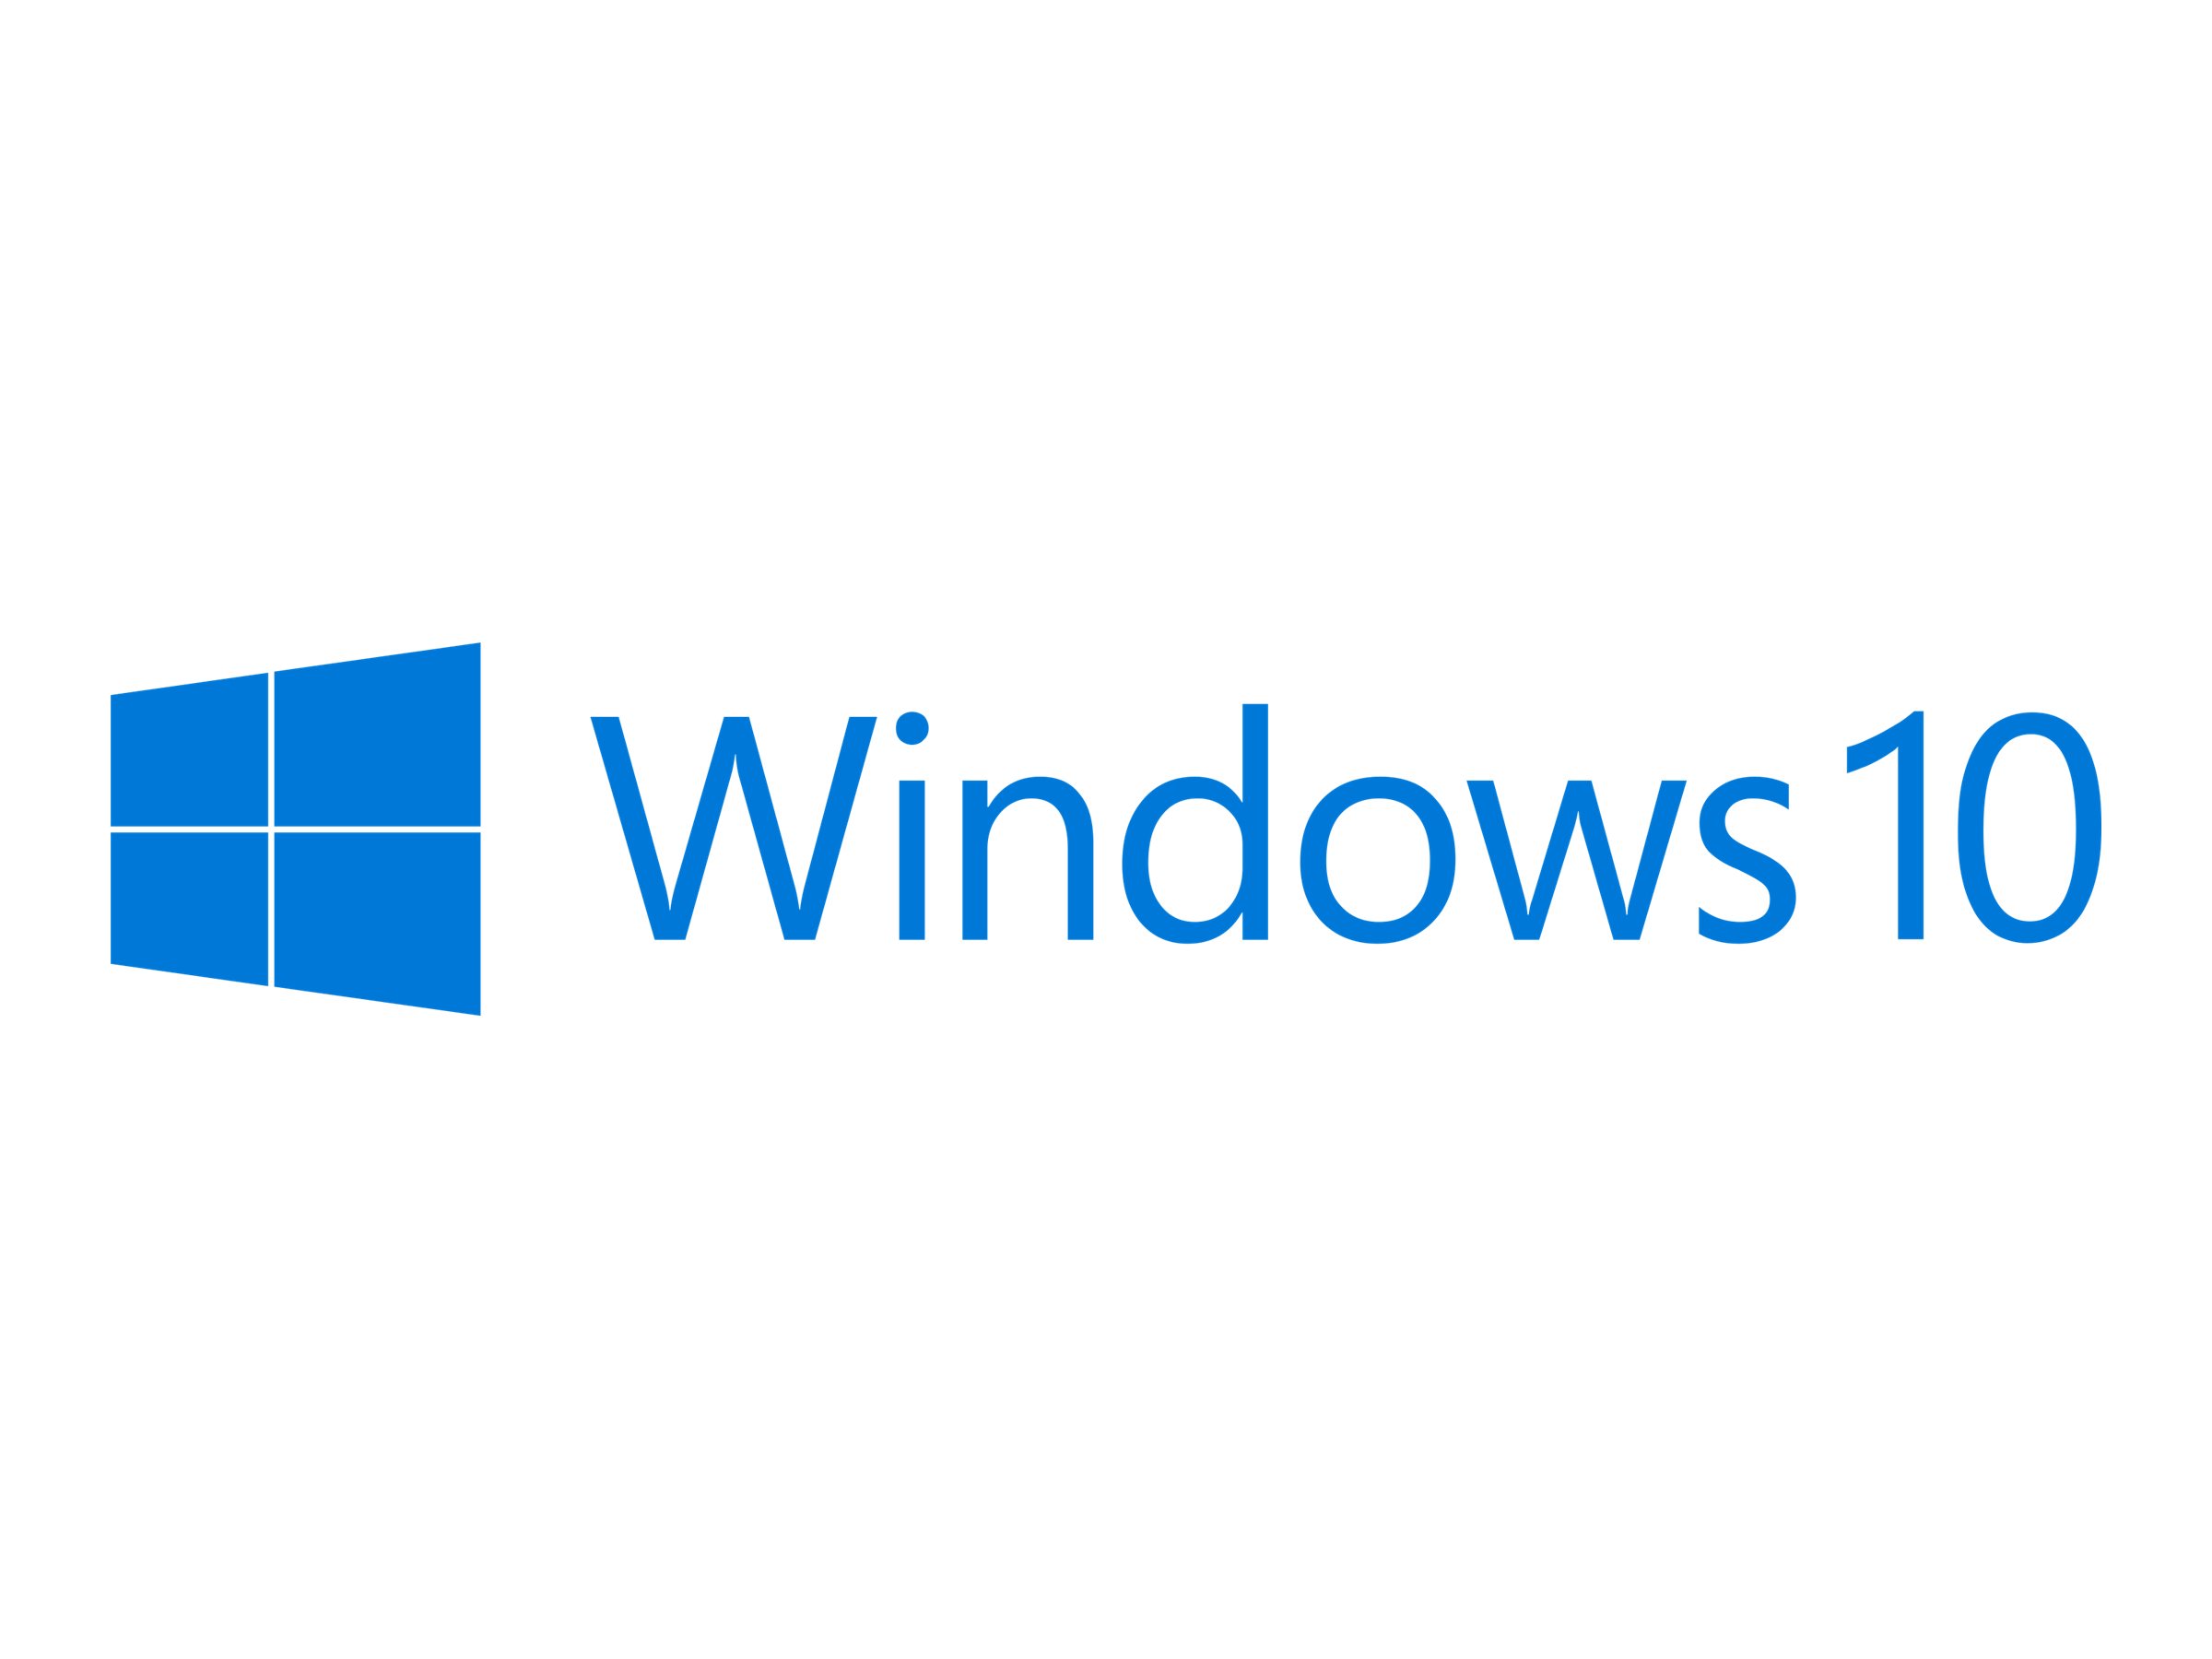 Windows 10 IoT Enterprise 2019 - Upgrade-Lizenz - 1 Lizenz - ESD - Kunde ist für die Erstellung einer Sicherungs-CD oder einer Hardcopy LTU verantwortlich, HP liefert kein physisches Produkt mit dieser elektronischen Software